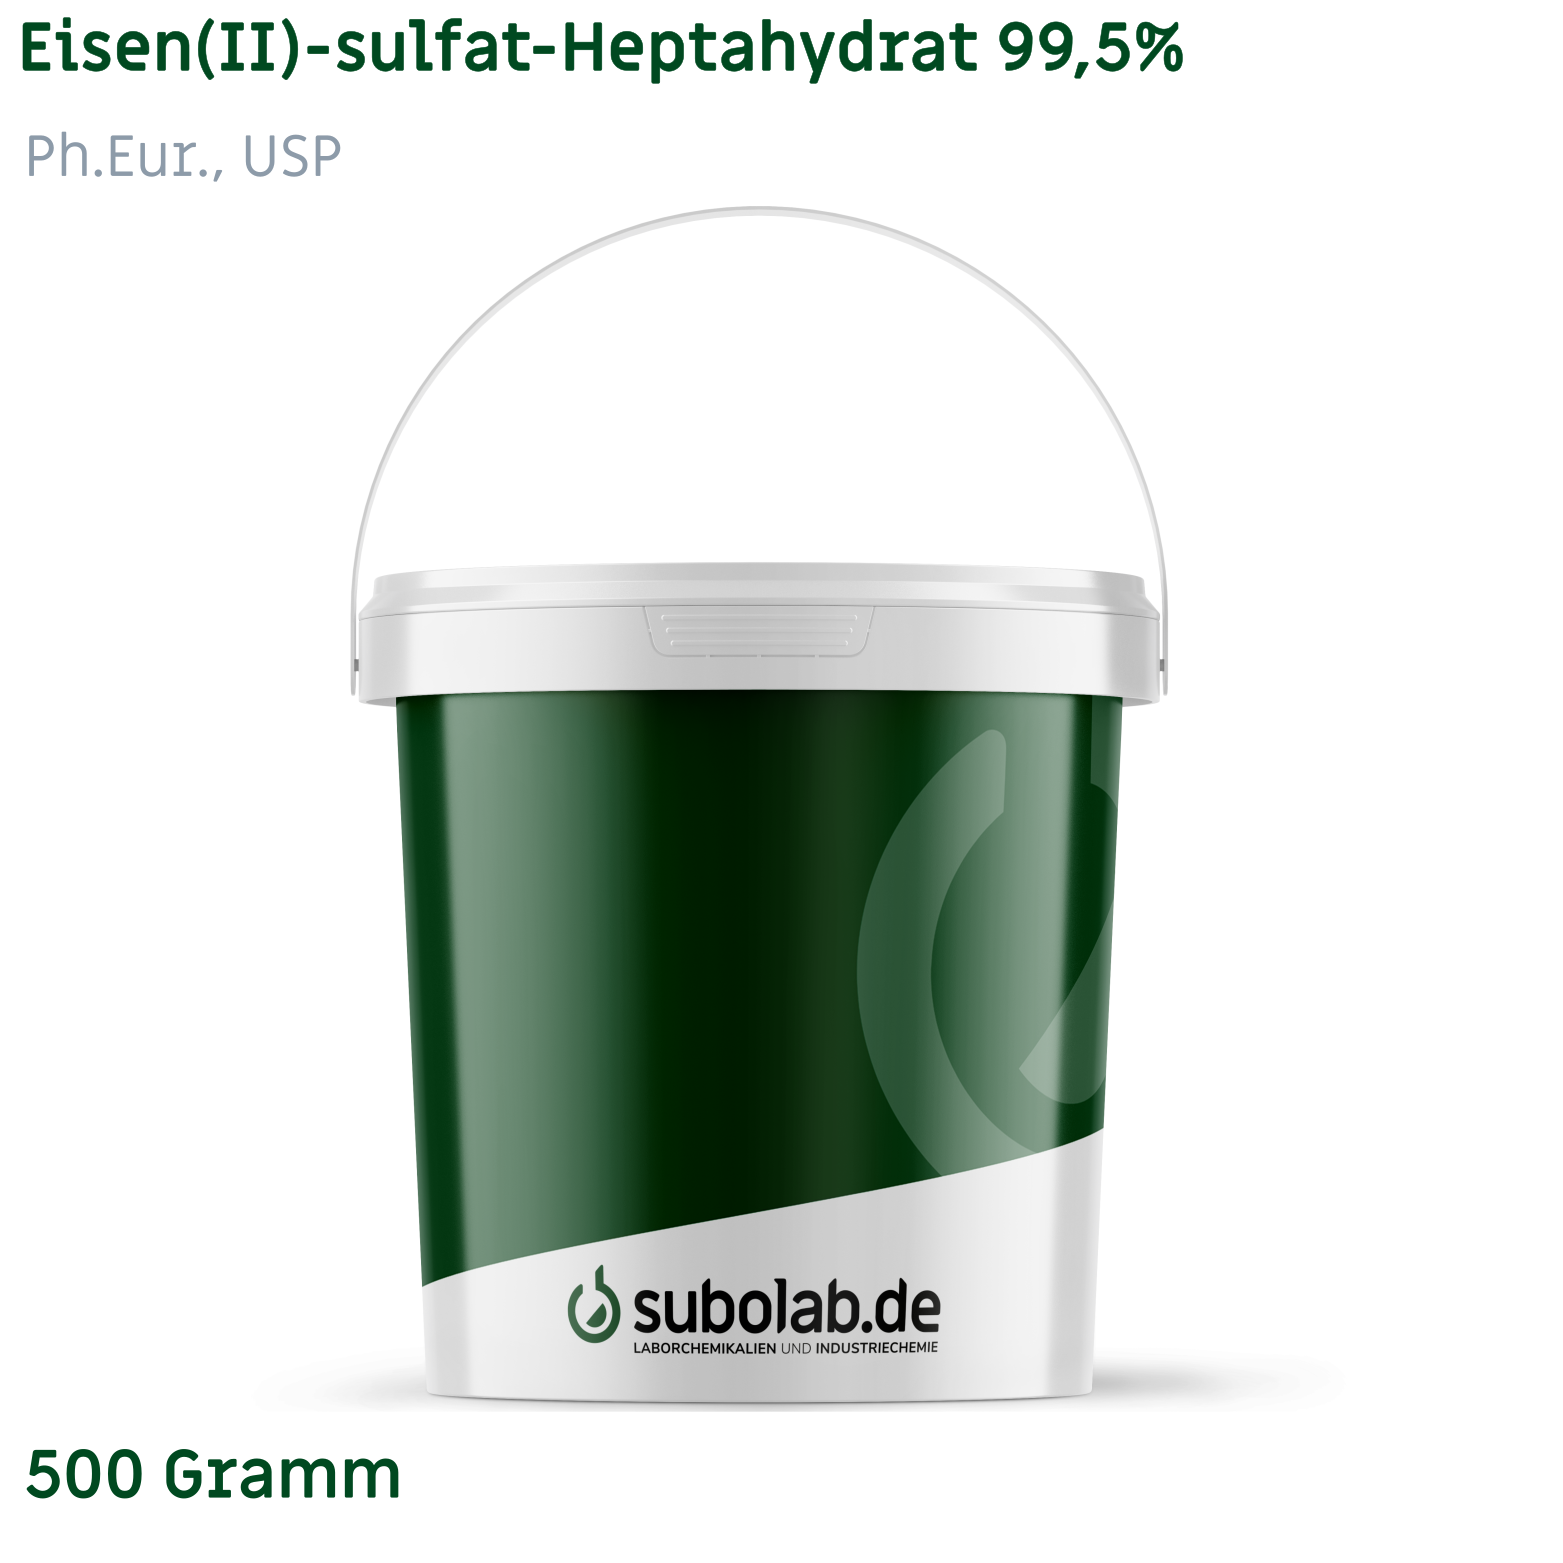 Bild von Eisen(II)-sulfat - Heptahydrat 99,5%, Ph.Eur., USP (500 Gramm)